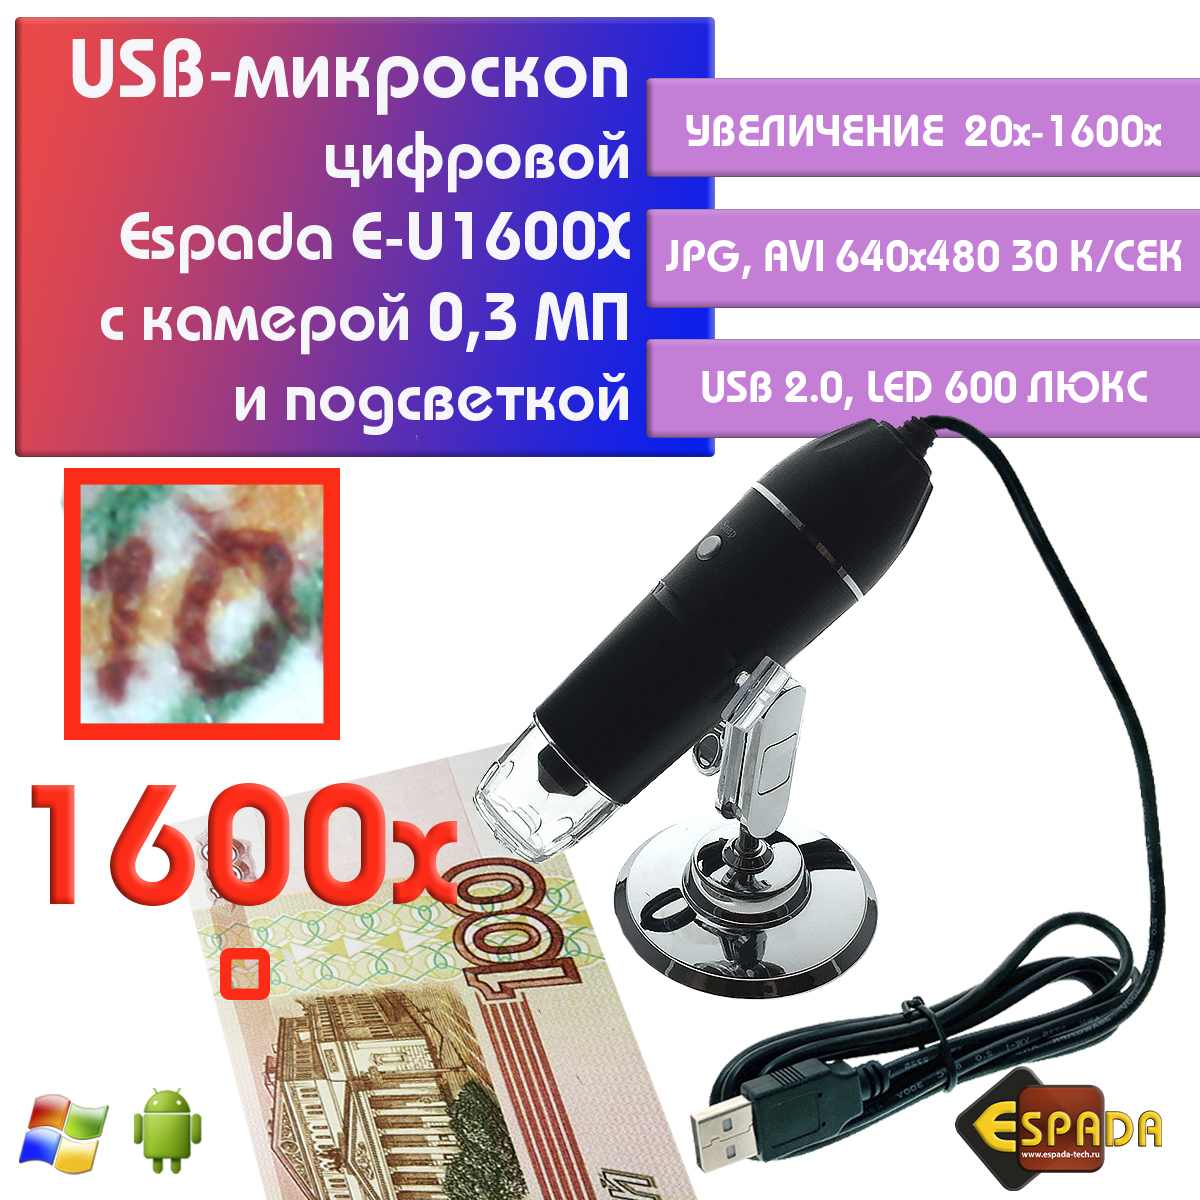 Портативный цифровой USB-микроскоп Espada E-U1600X c камерой 0,3 МП и увеличением 1600x видеокарта asus rx 550 2gb ph 550 2g